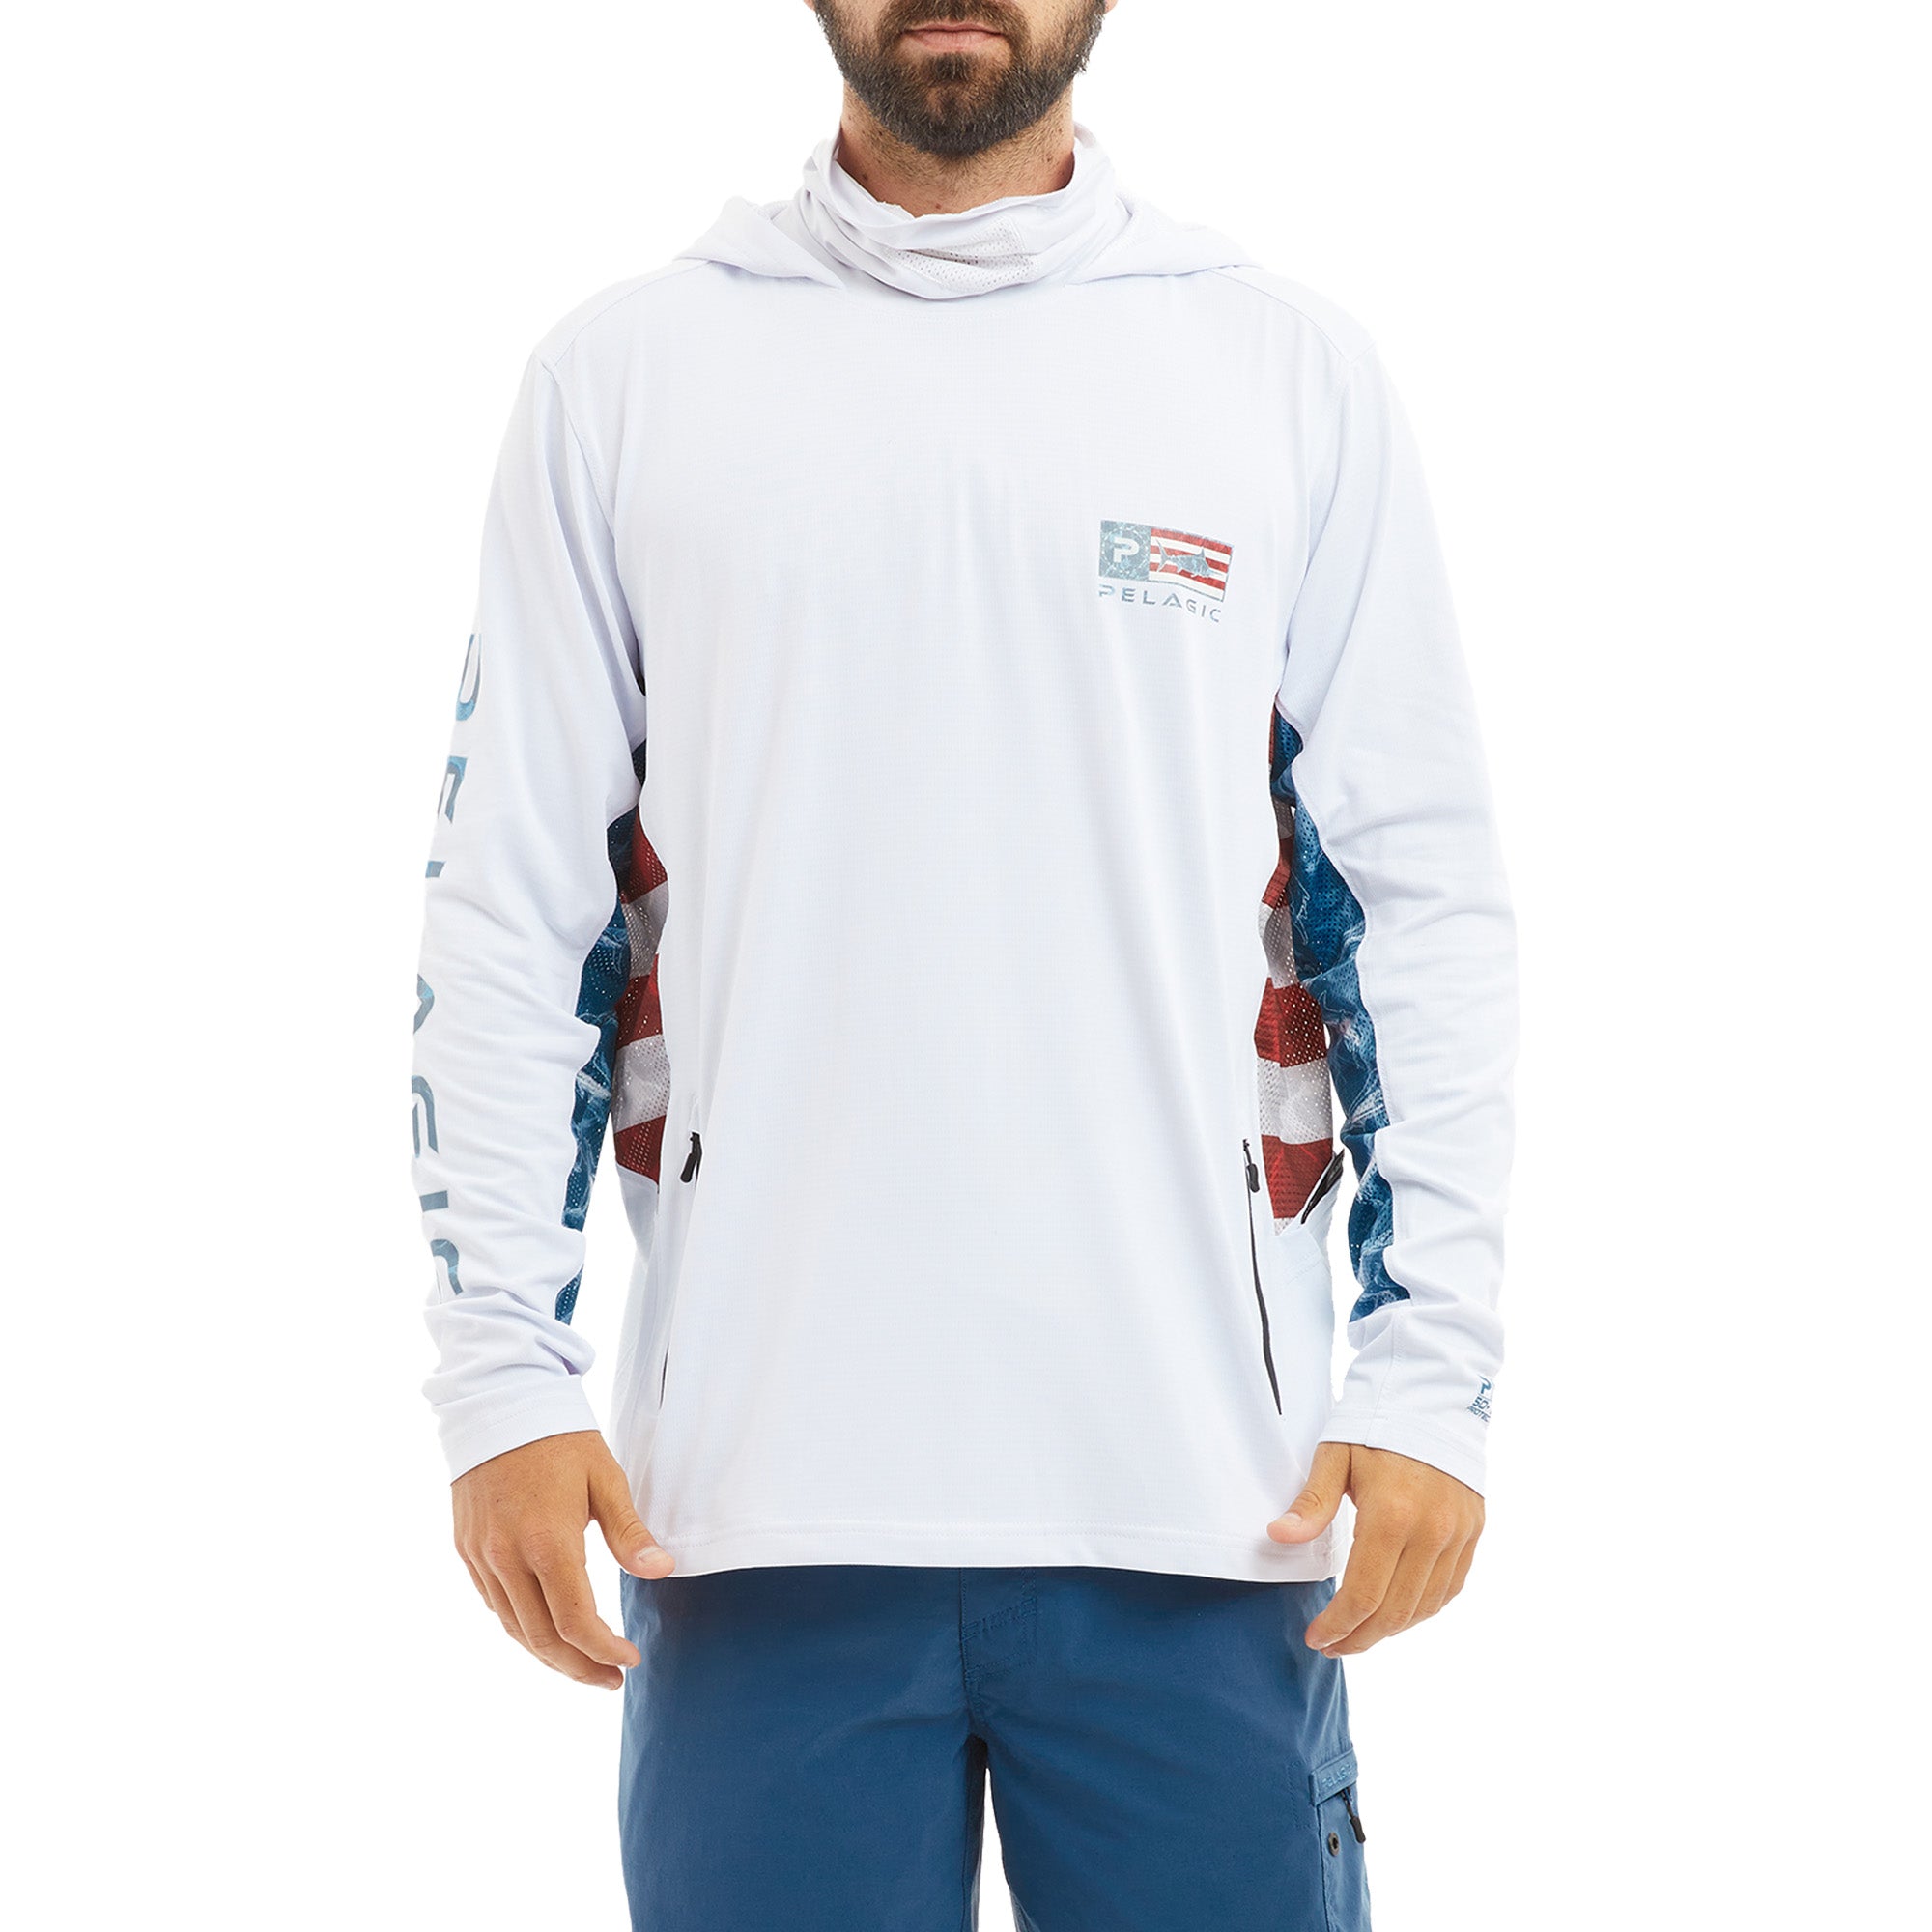 Pelagic Gear - Exo-Tech Hooded Fishing Shirt - Navy